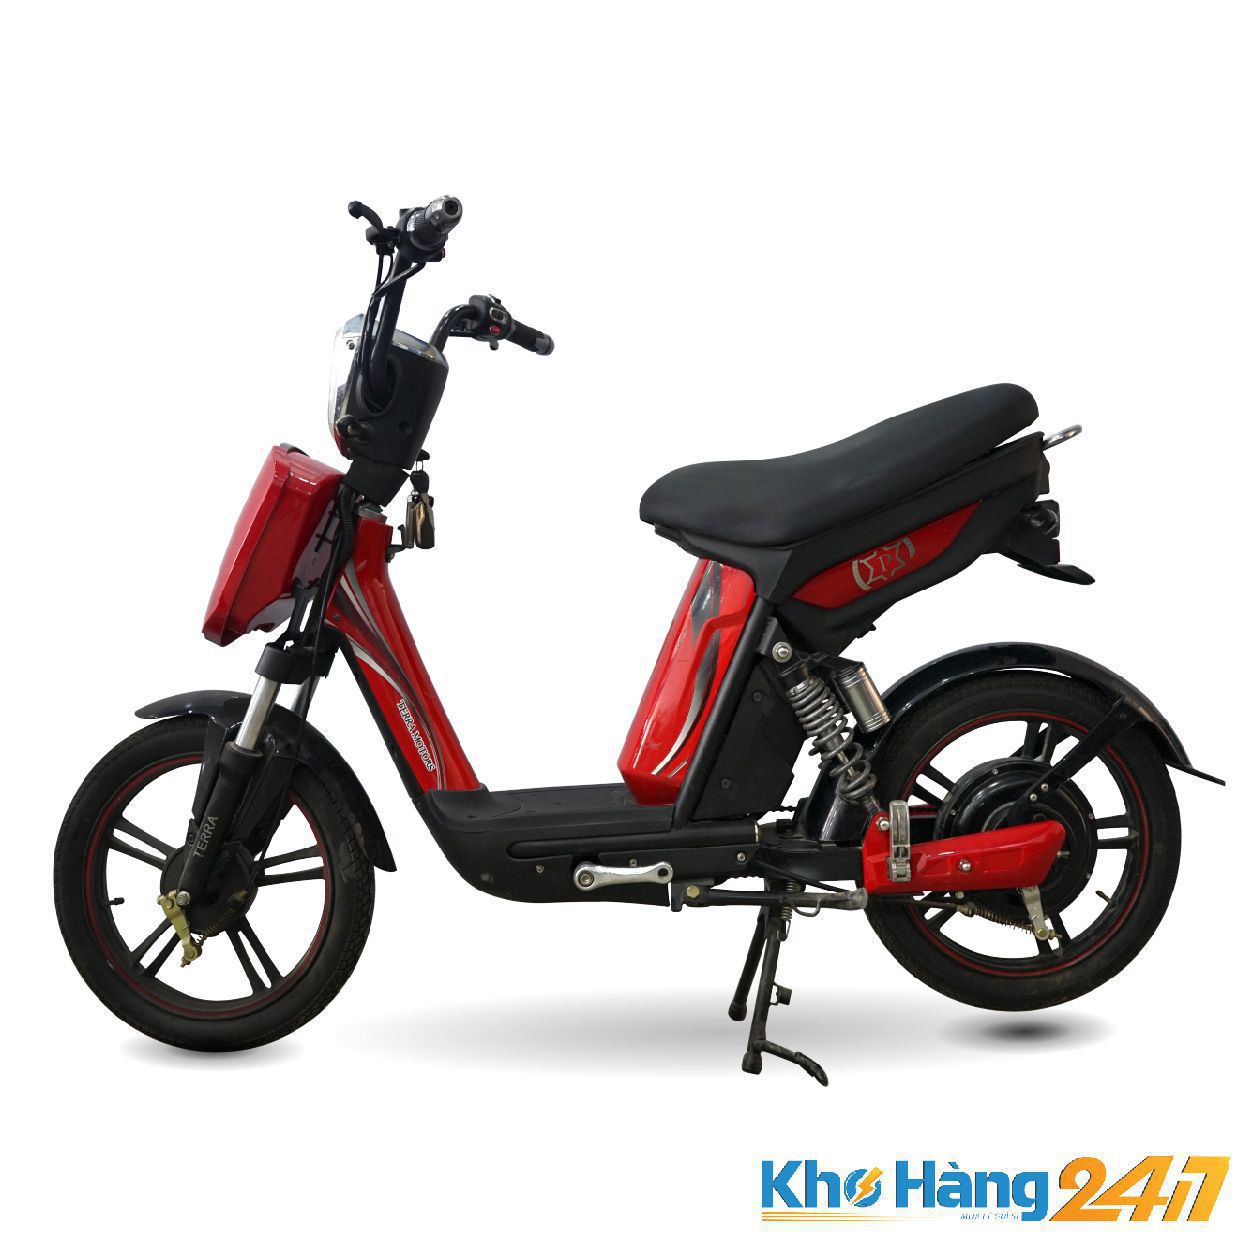 XE DAP DIEN CAP TERRA MOTORS 01 - Tìm hiểu ngay nơi bán xe máy điện cũ uy tín tại HCM – Khohang247